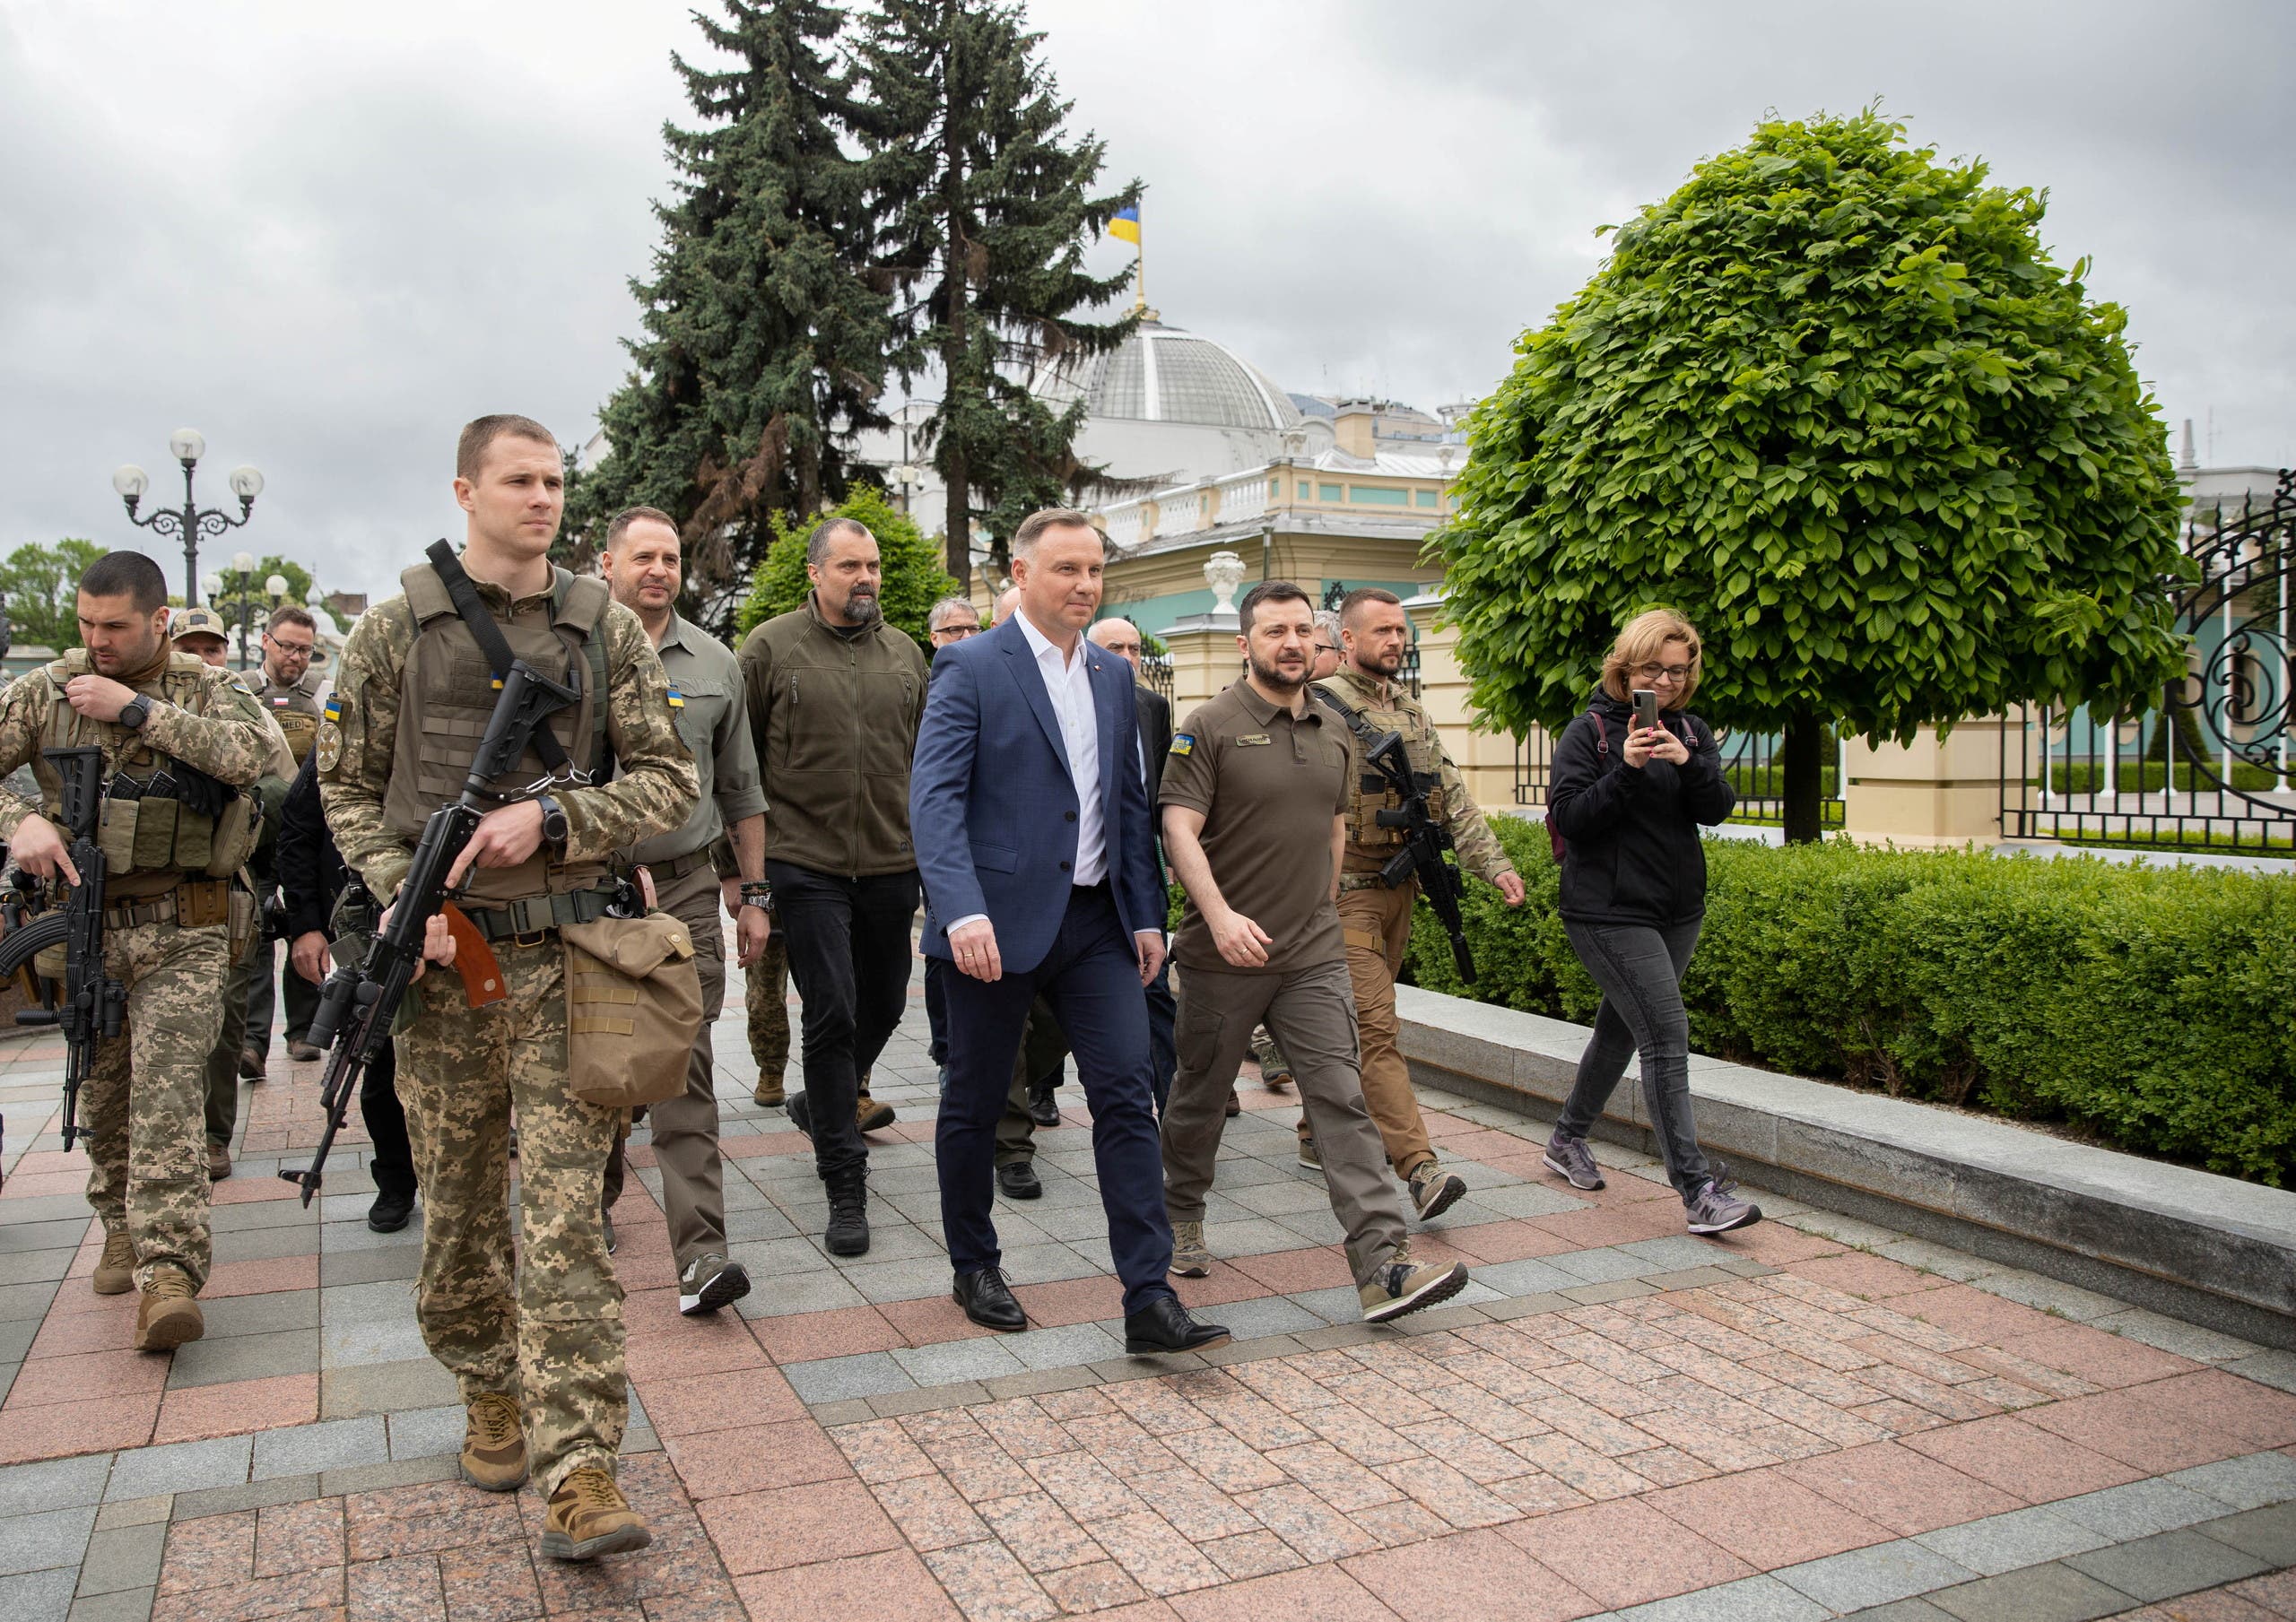 Polish President Andrzej Duda with Zelensky in Kyiv this week